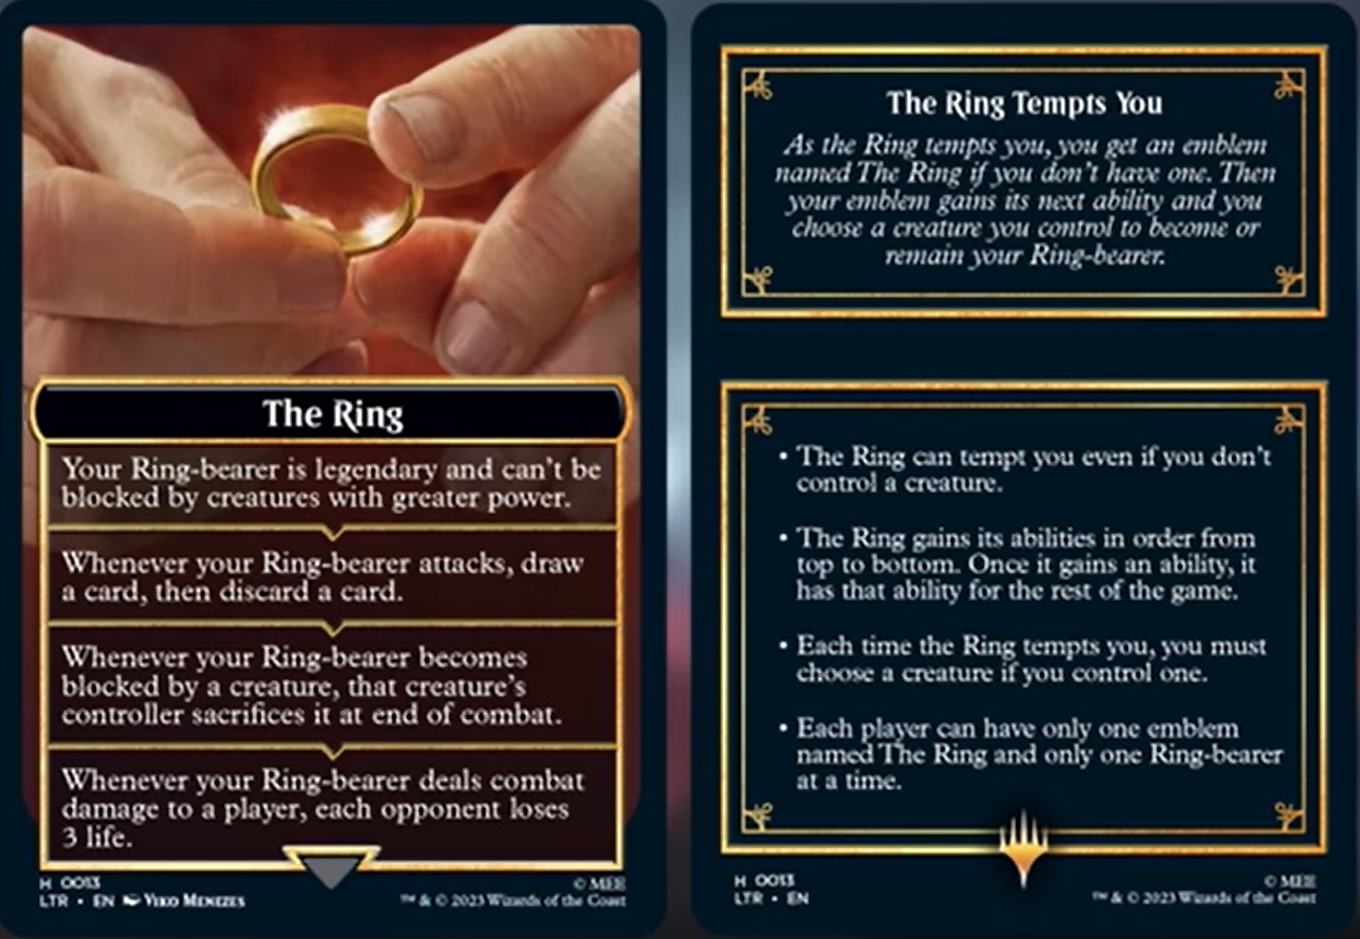 the ring tempts you emblem